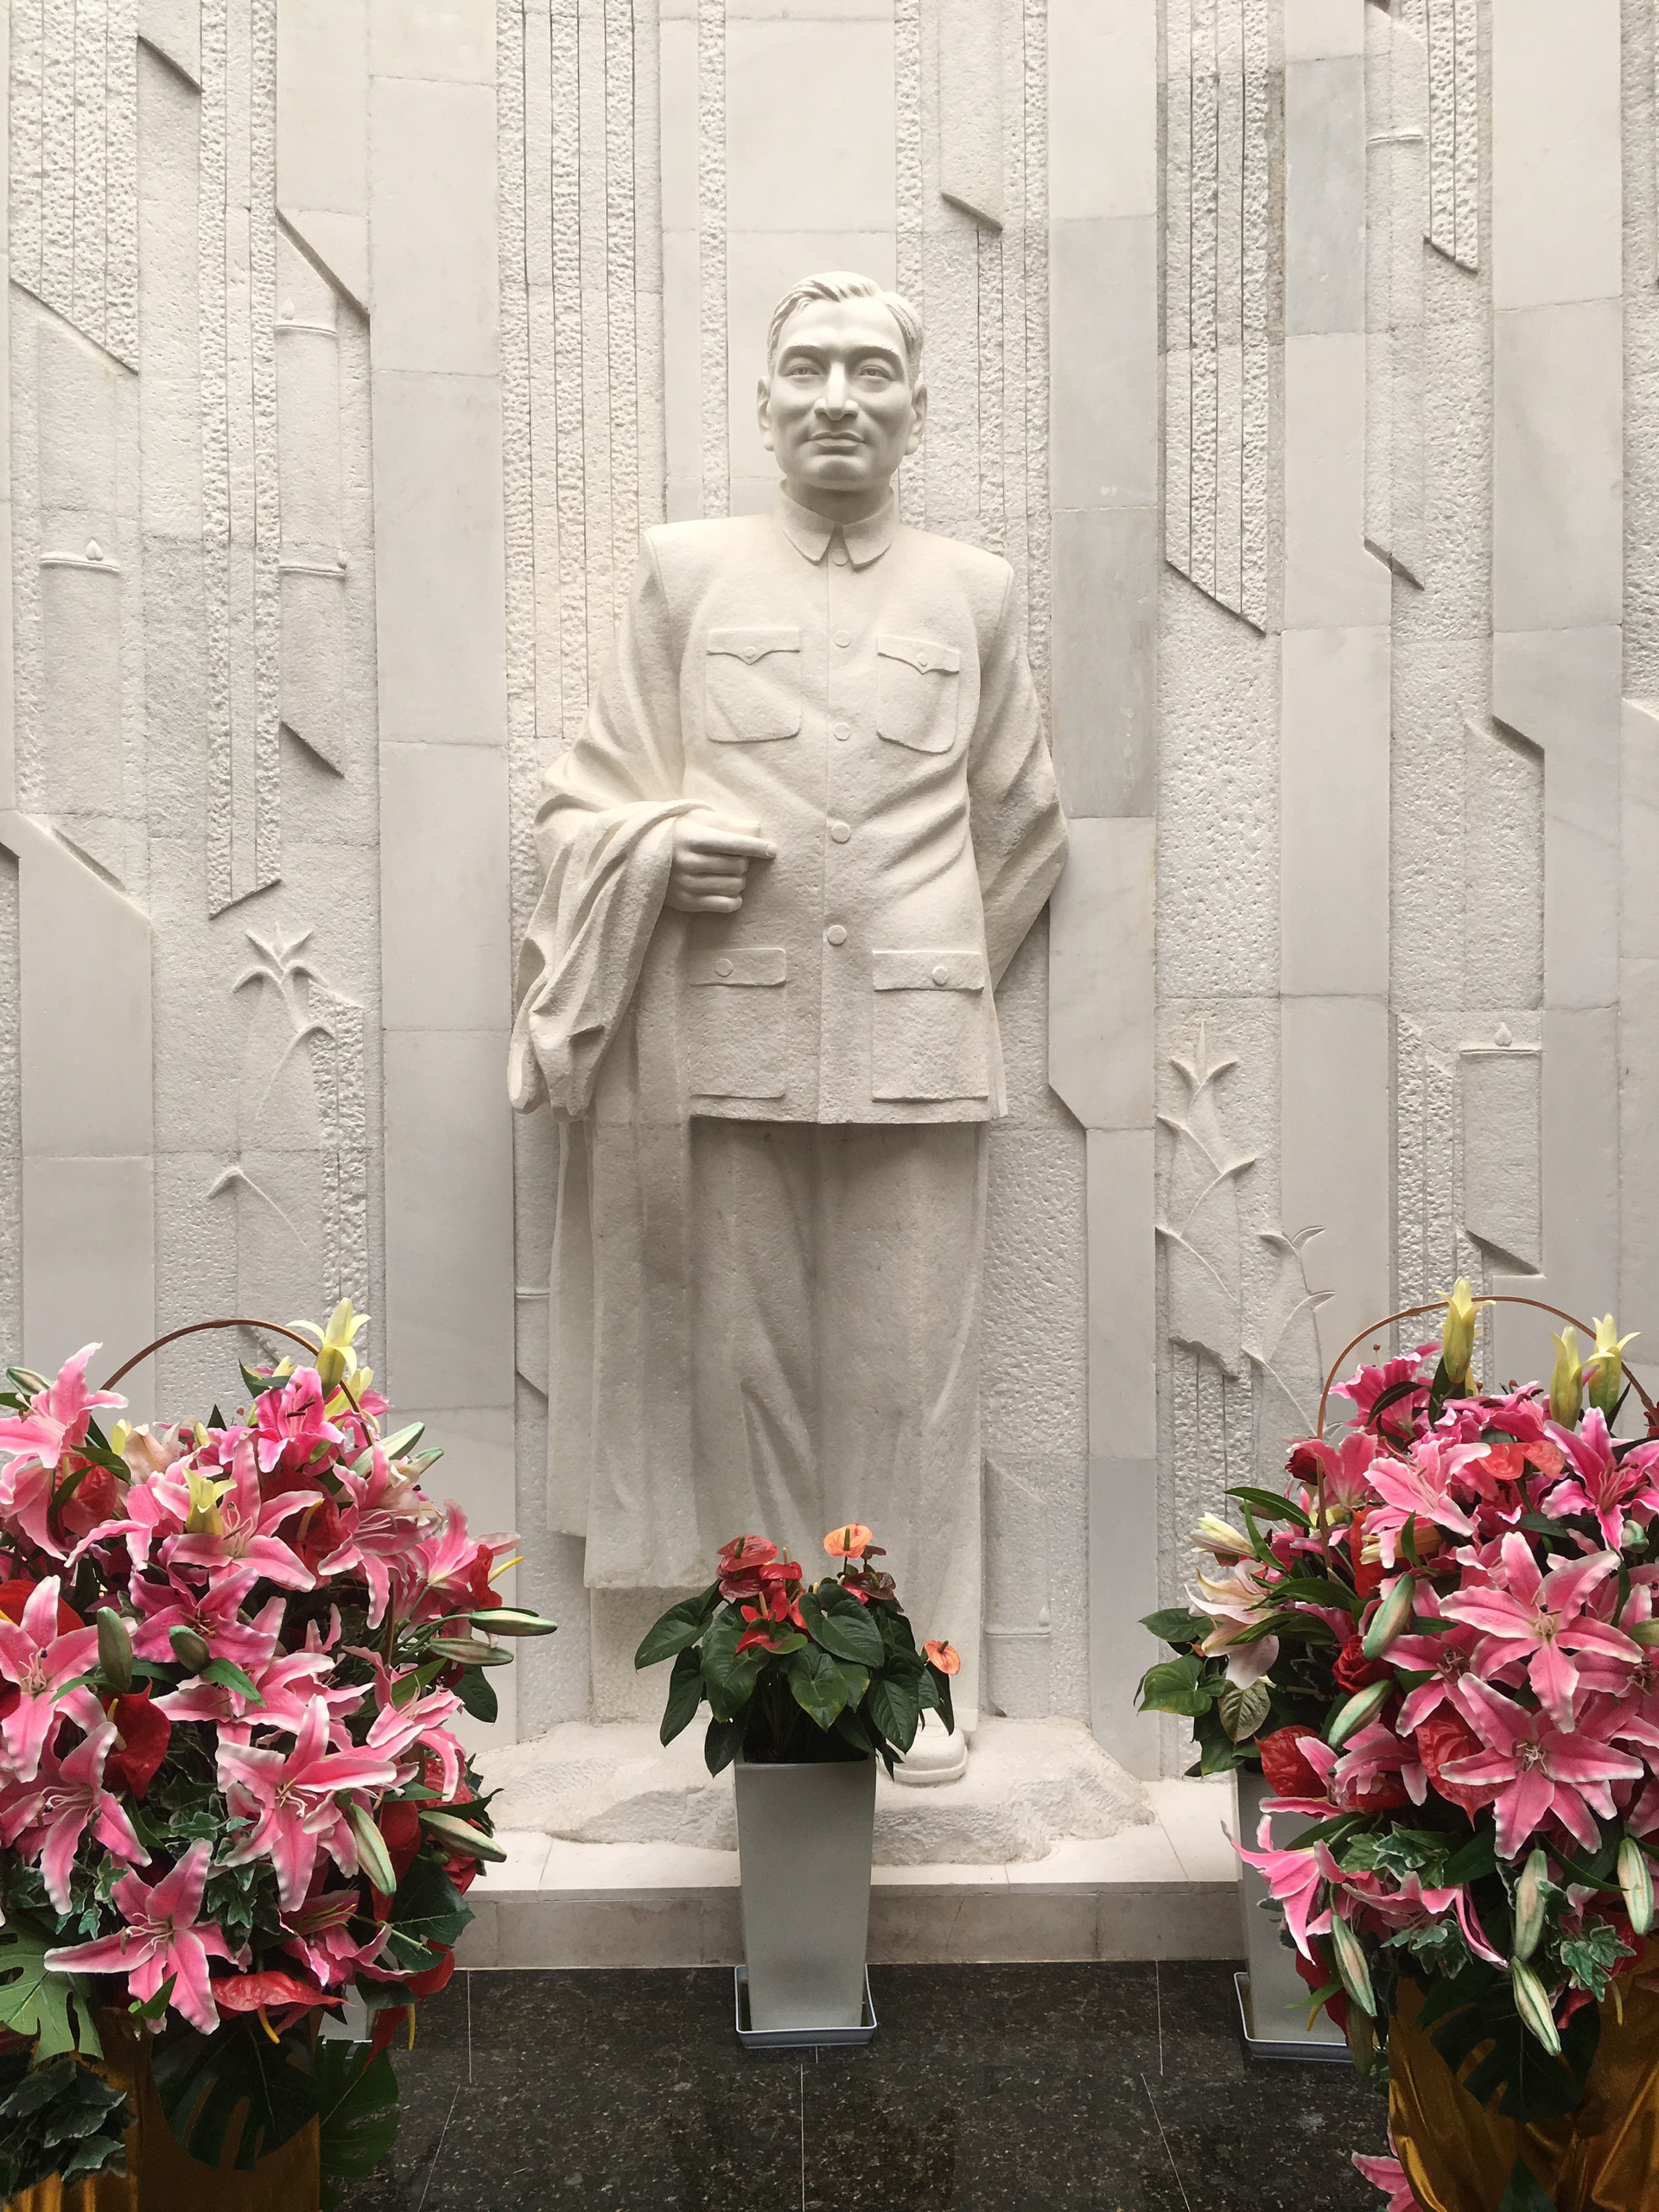 陈云纪念馆-陈云为新中国建立国民经济体系的奠基人。